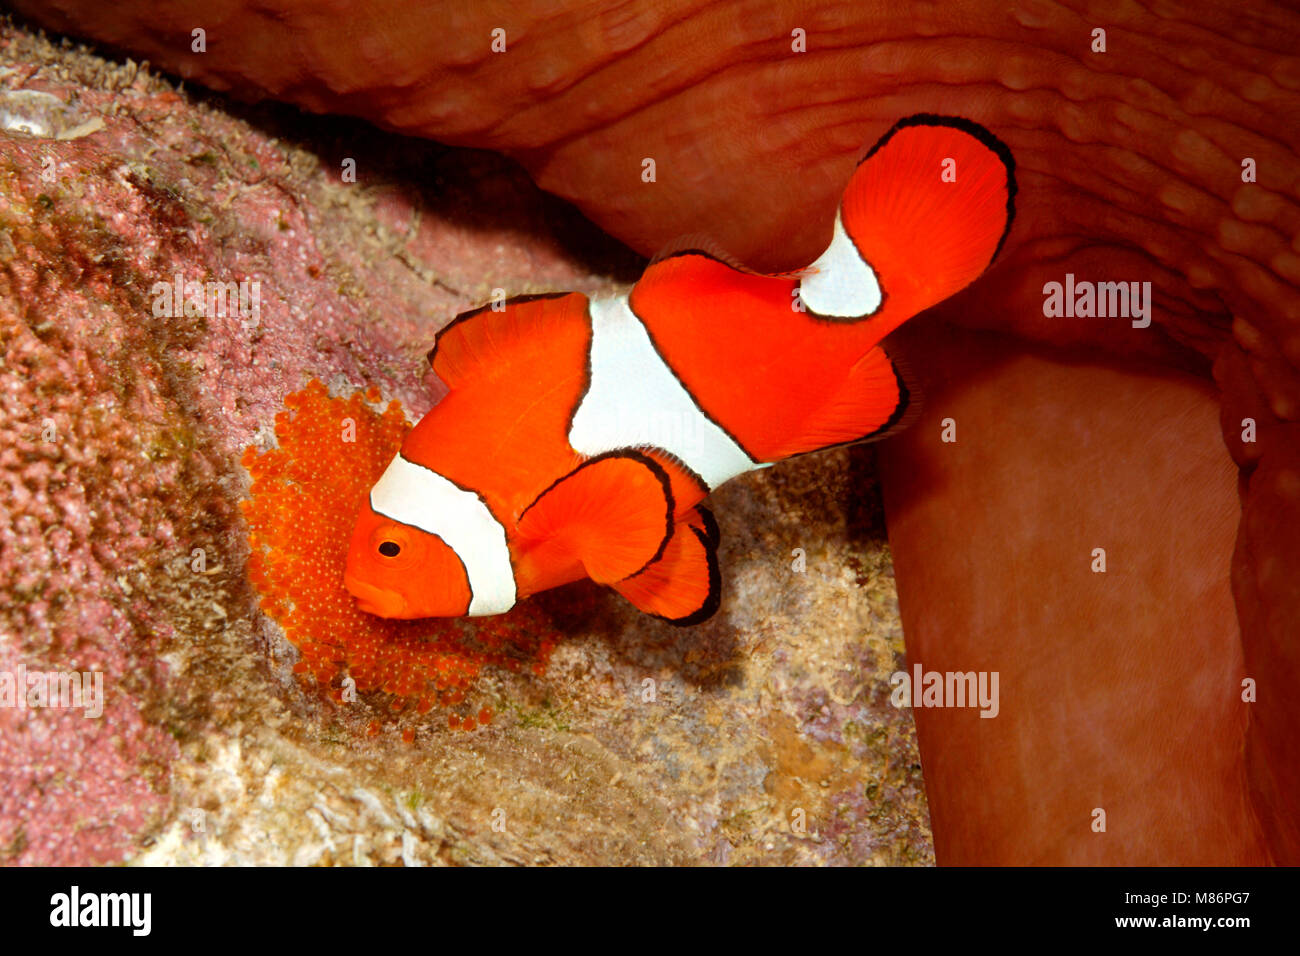 Clownfish, Amphiprion percula, pesci maschi tendendo le uova deposte sul substrato cancellata sotto il magnifico host anemone marittimo, Heteractis magnifica Foto Stock